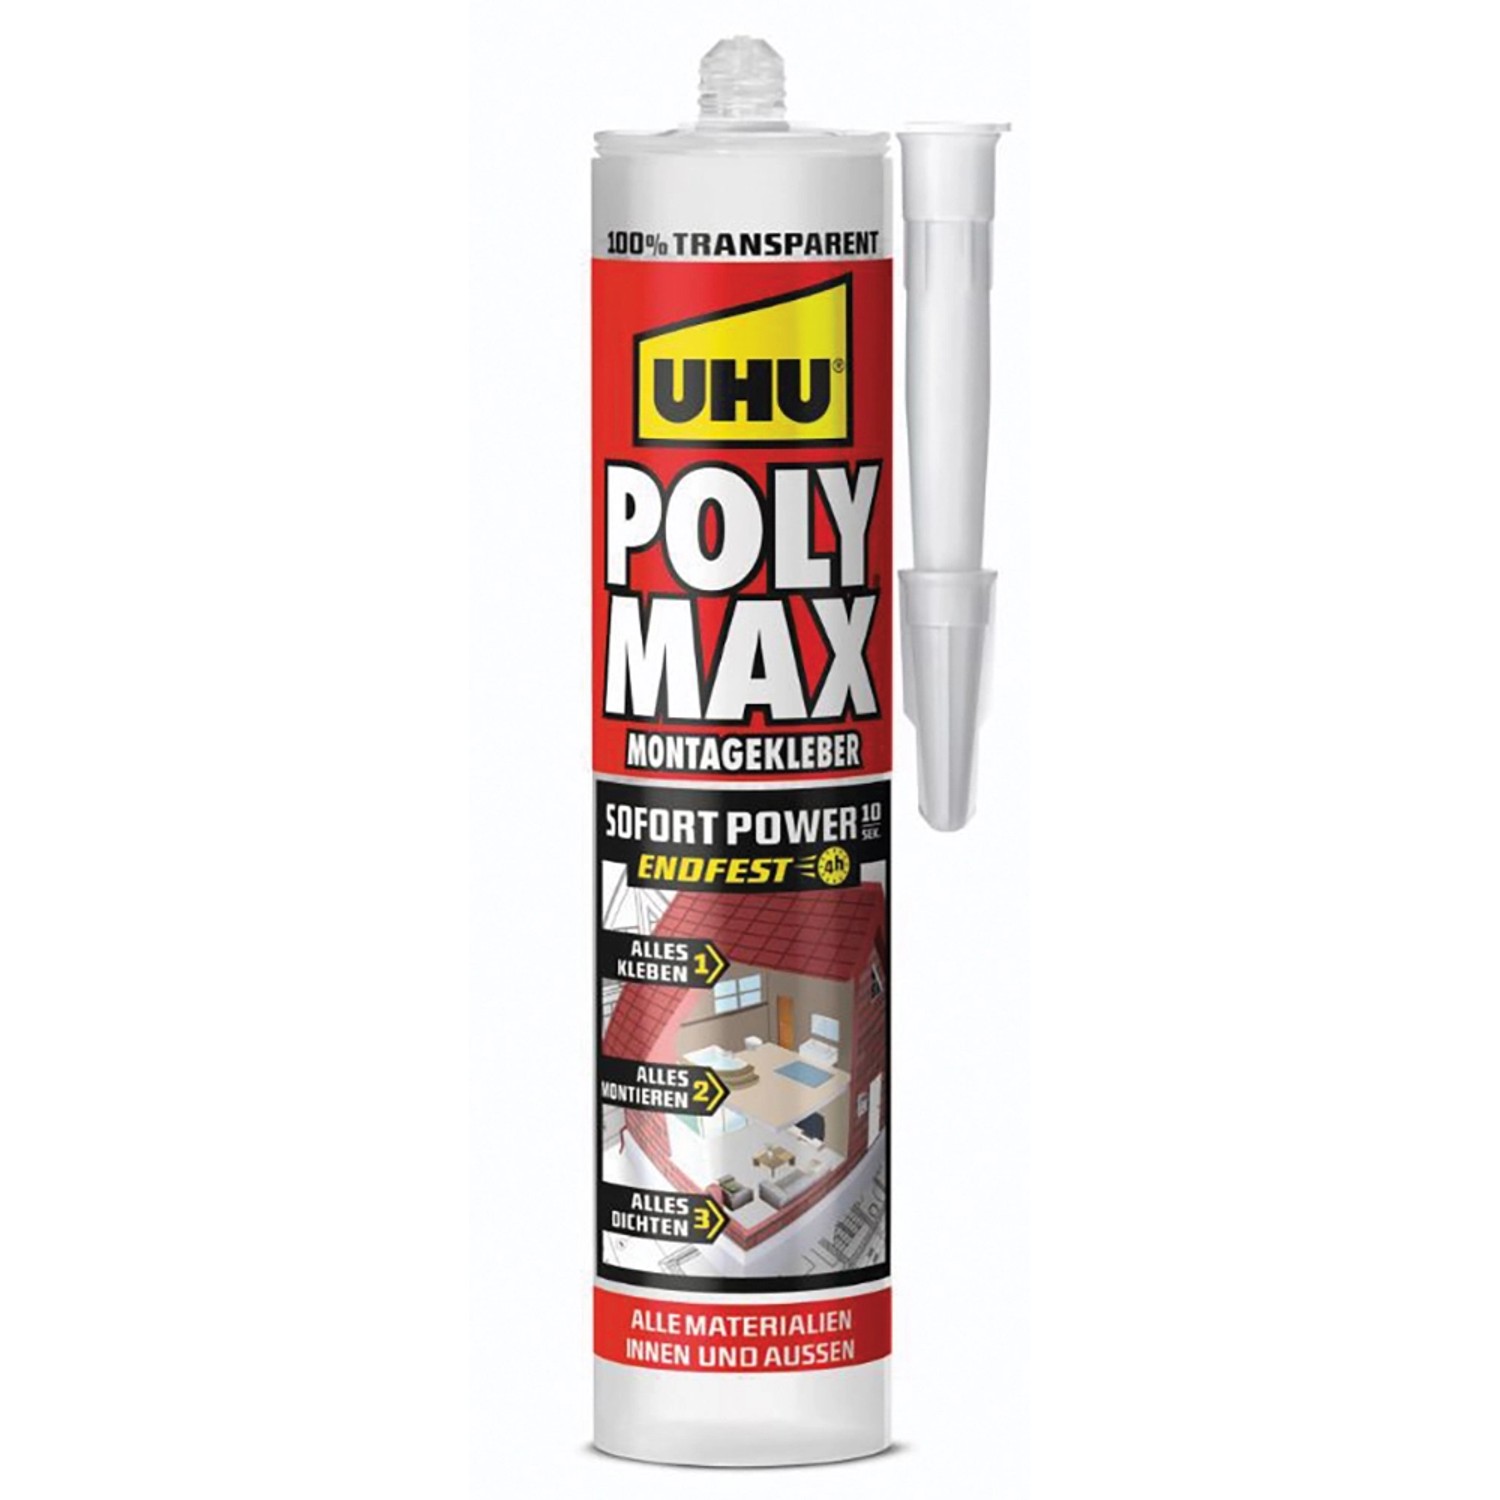 UHU Poly Max Montagekleber Sofort Power Transparent 300 g von UHU